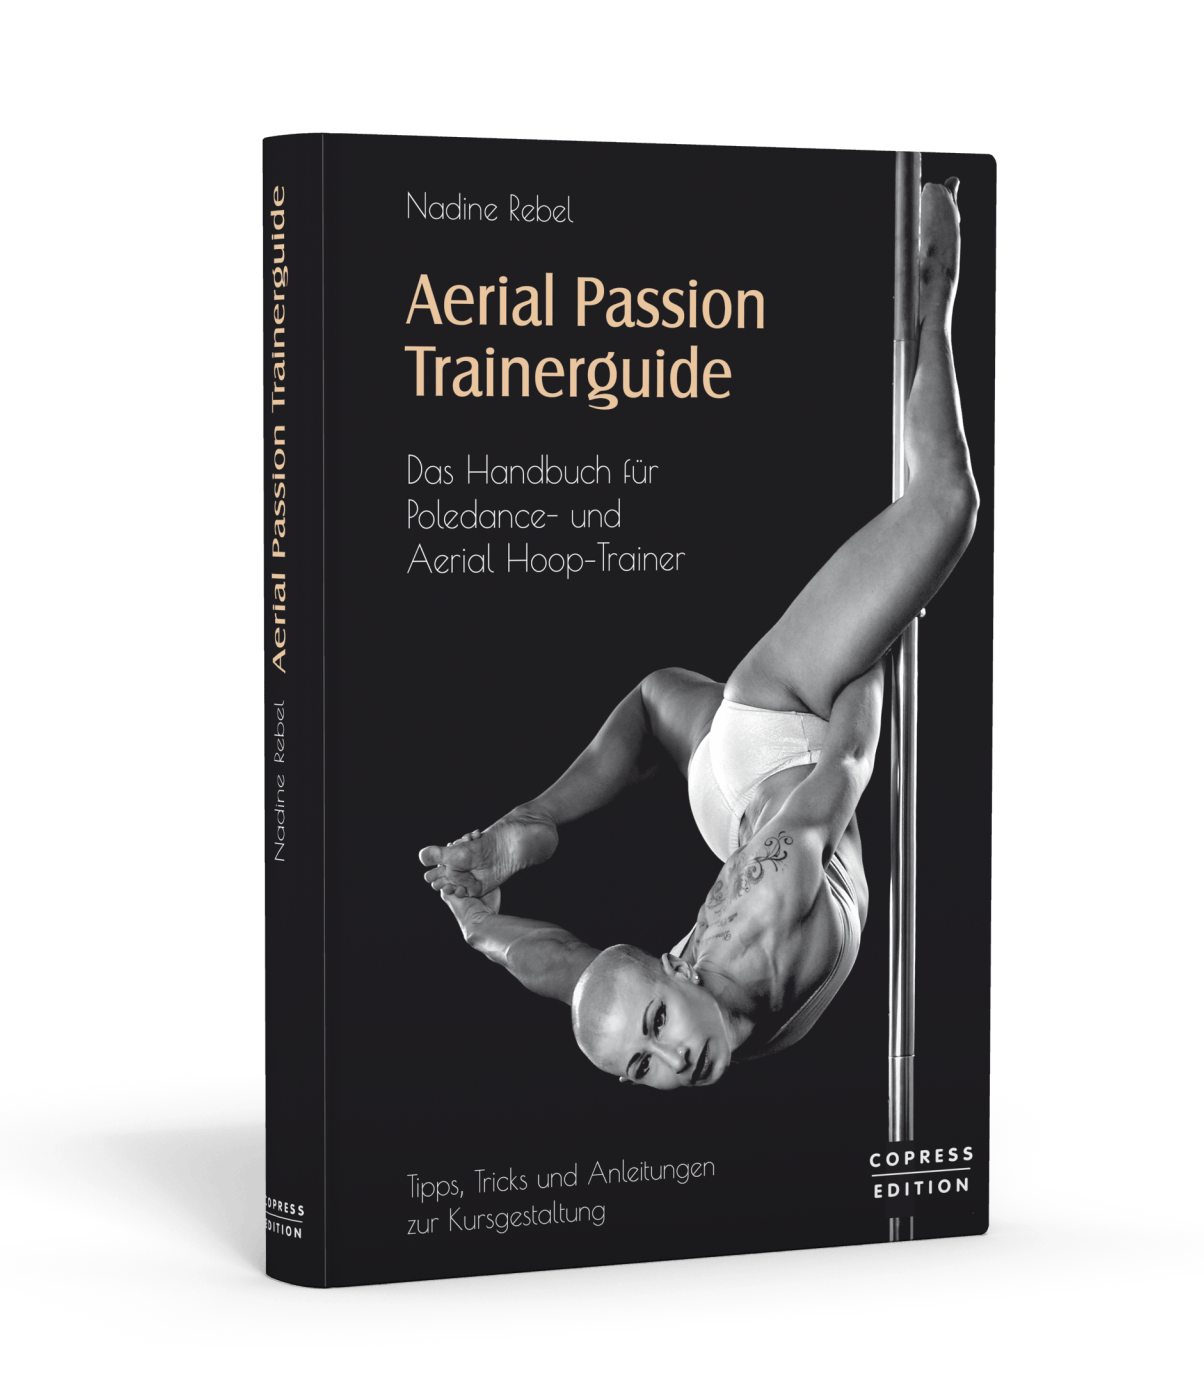 Aerial Passion Trainerguide, das vierte Buch von Nadine Rebel